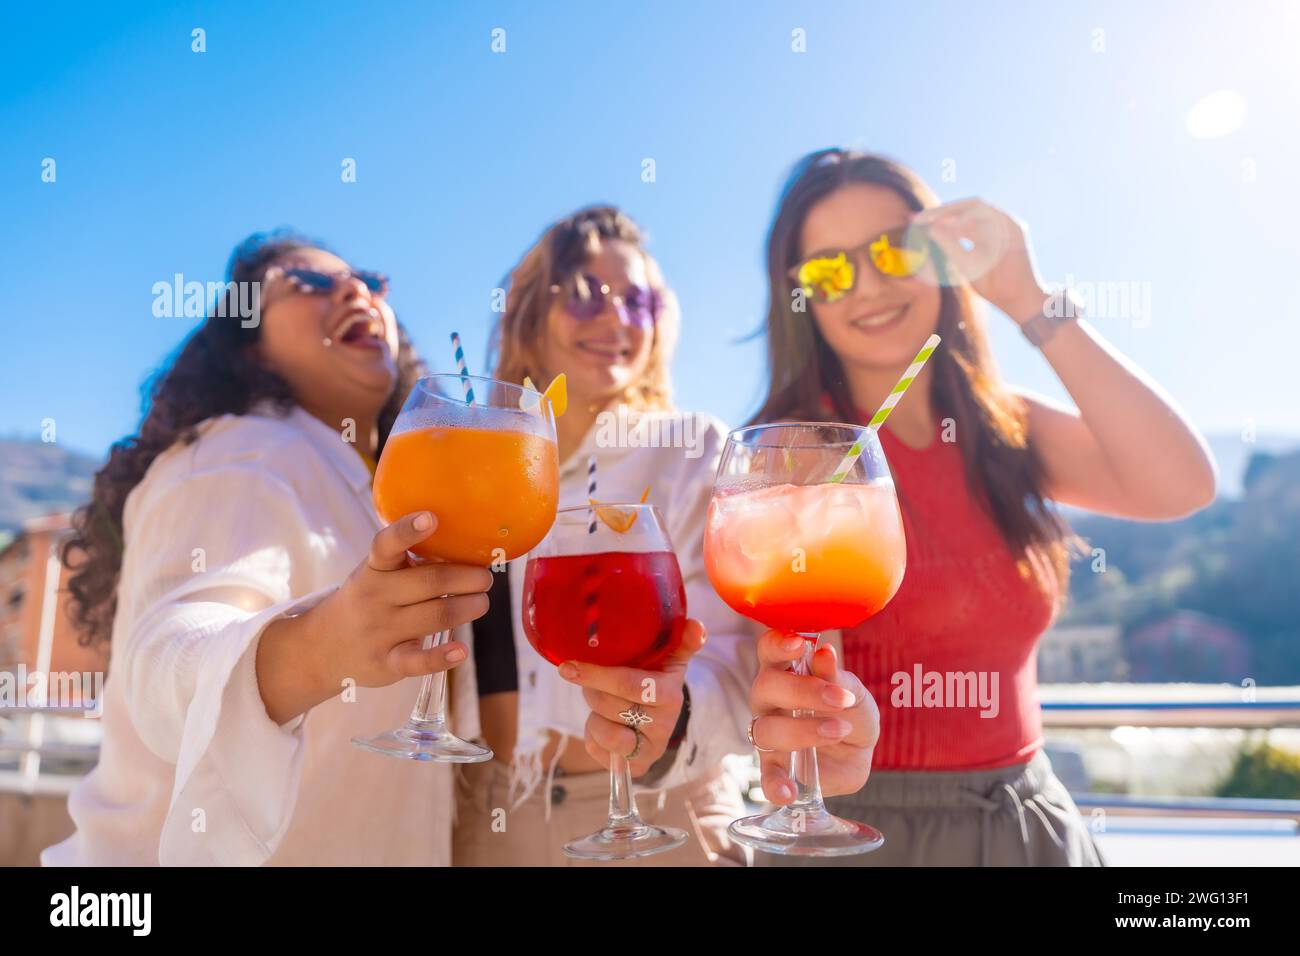 Frontfoto von drei Freundinnen, die Cocktails trinken und im Sommer Spaß auf einem Dach haben Stockfoto